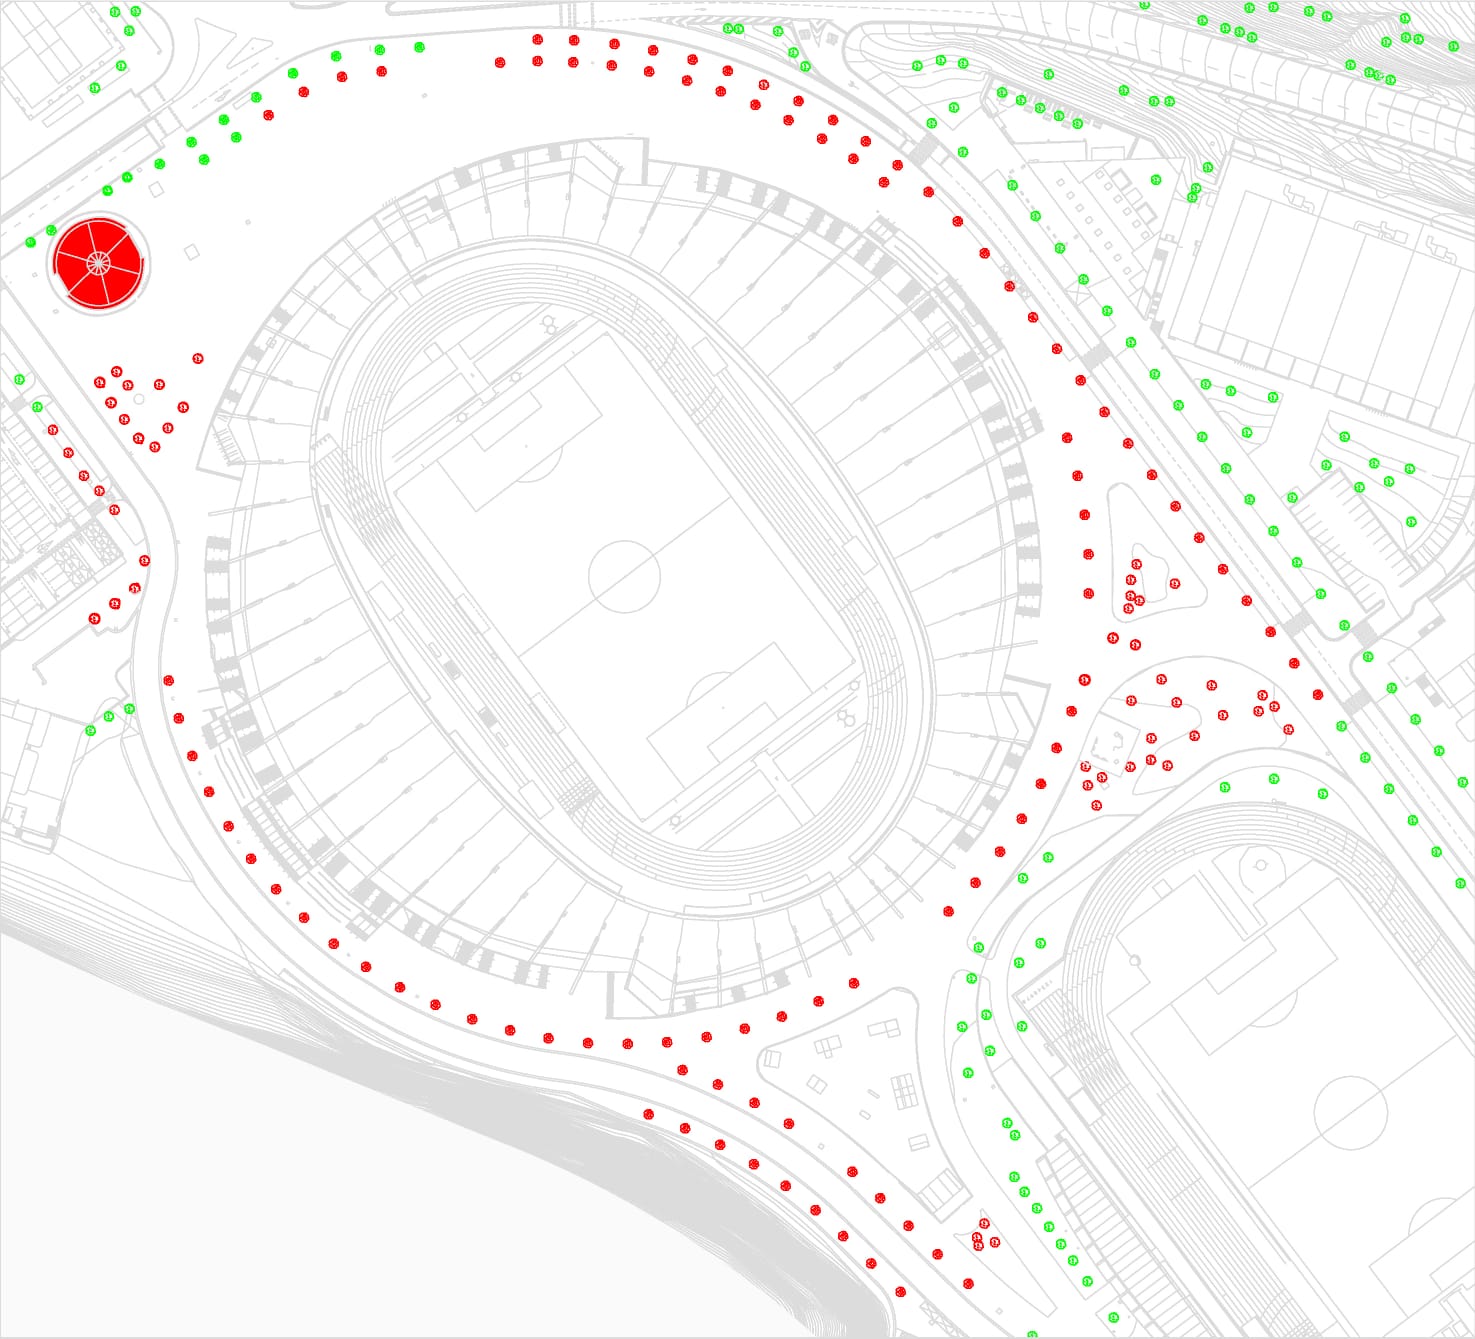 Los puntos rojos sobre el plano representan a los árboles que fueron eliminados con ocasión de la ampliación del estadio.